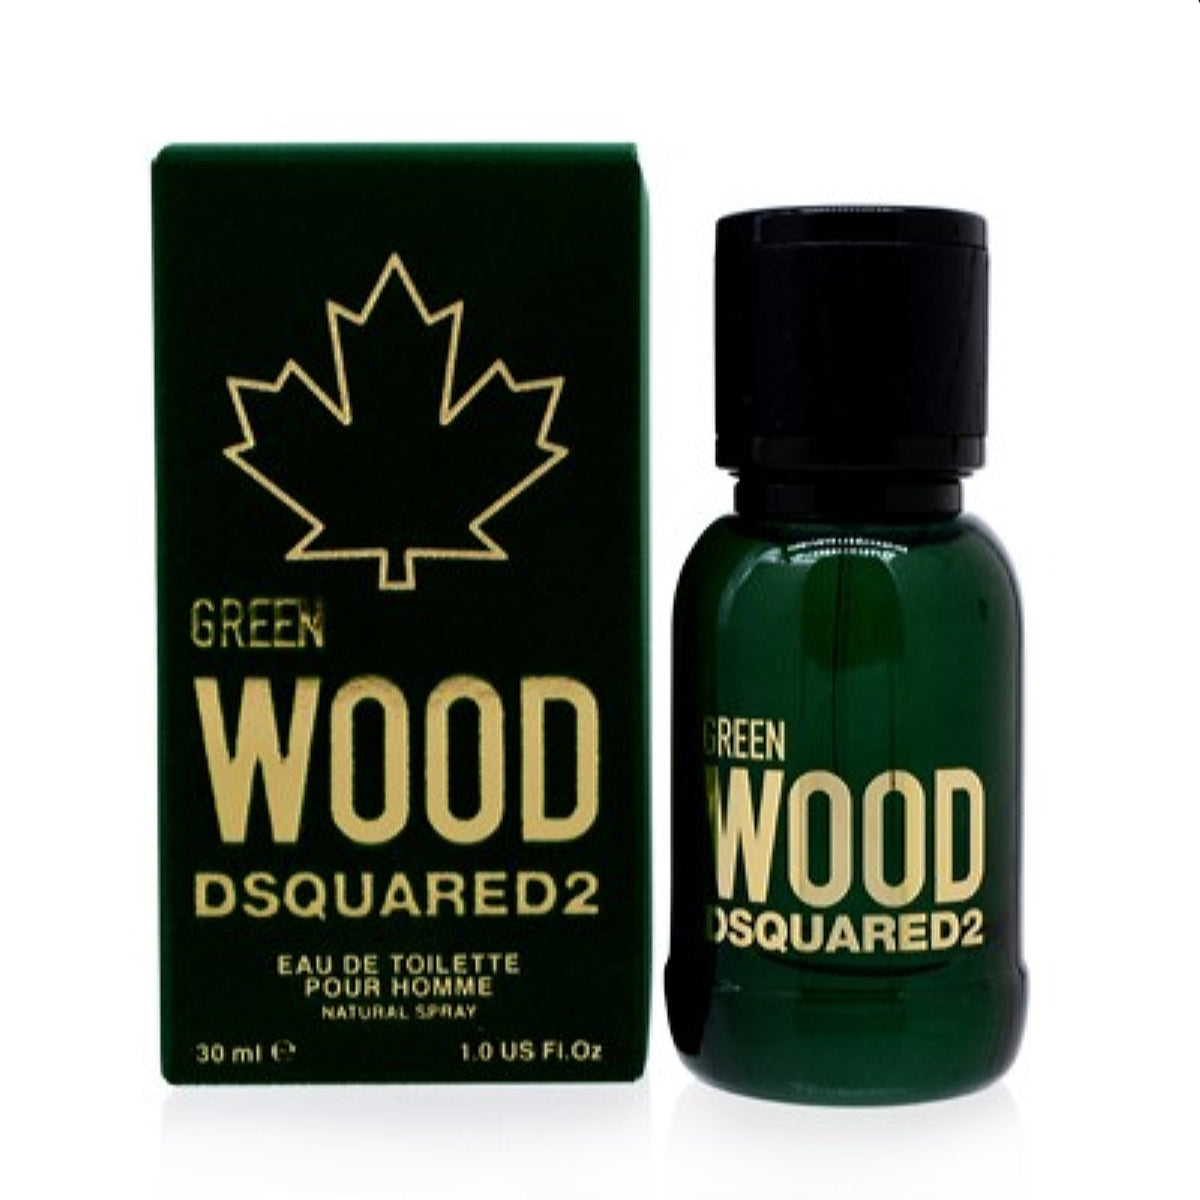 Green Wood Dsquared2 Edt Spray 1.0 Oz (30 Ml) For Men 5D07